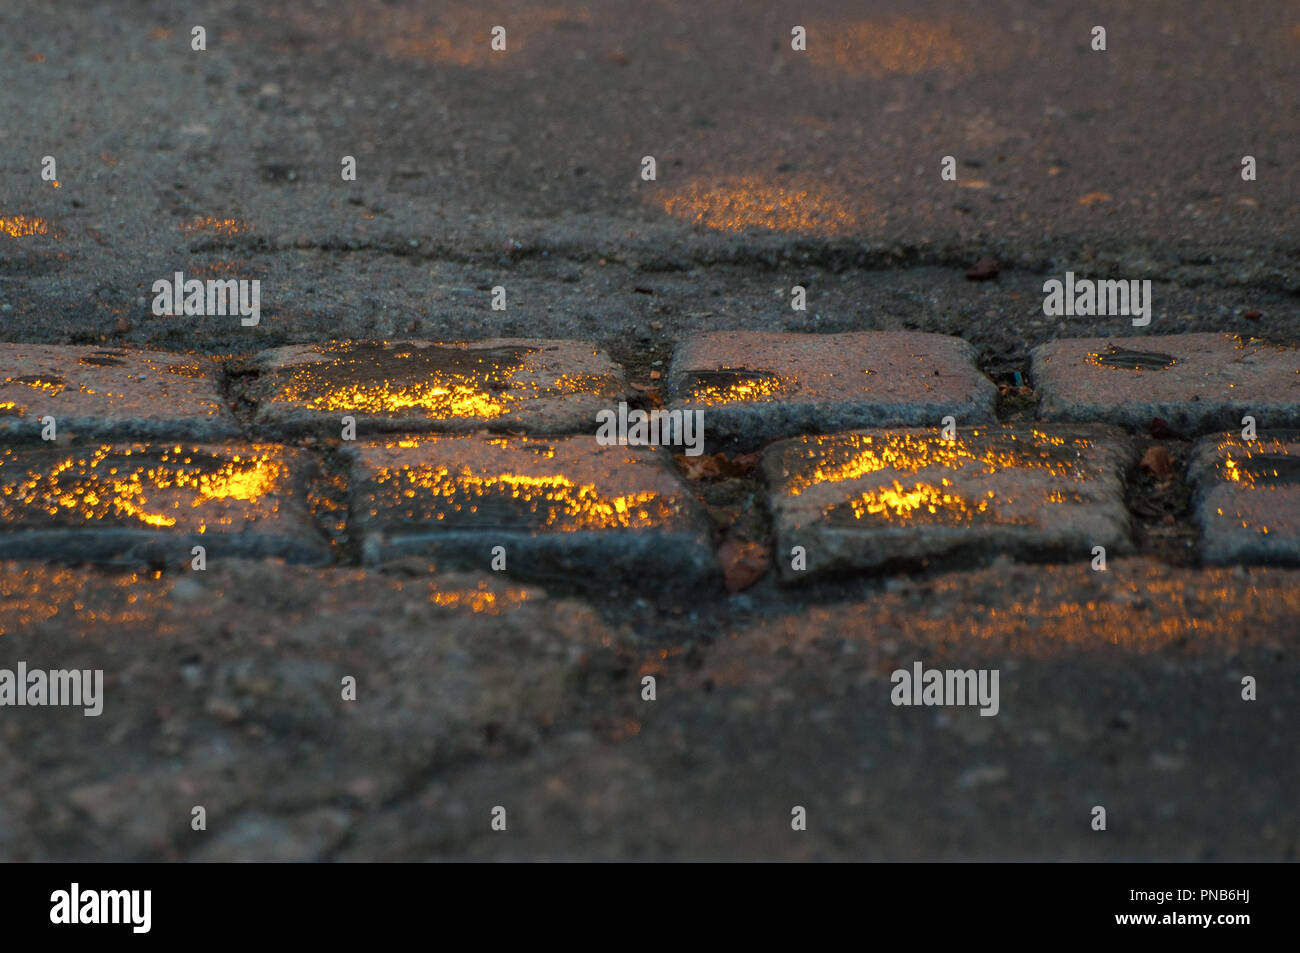 Un trottoir baigné dans l'or gris, recouvert de pavés avec des gouttelettes de pluie qui reflètent le soleil Banque D'Images